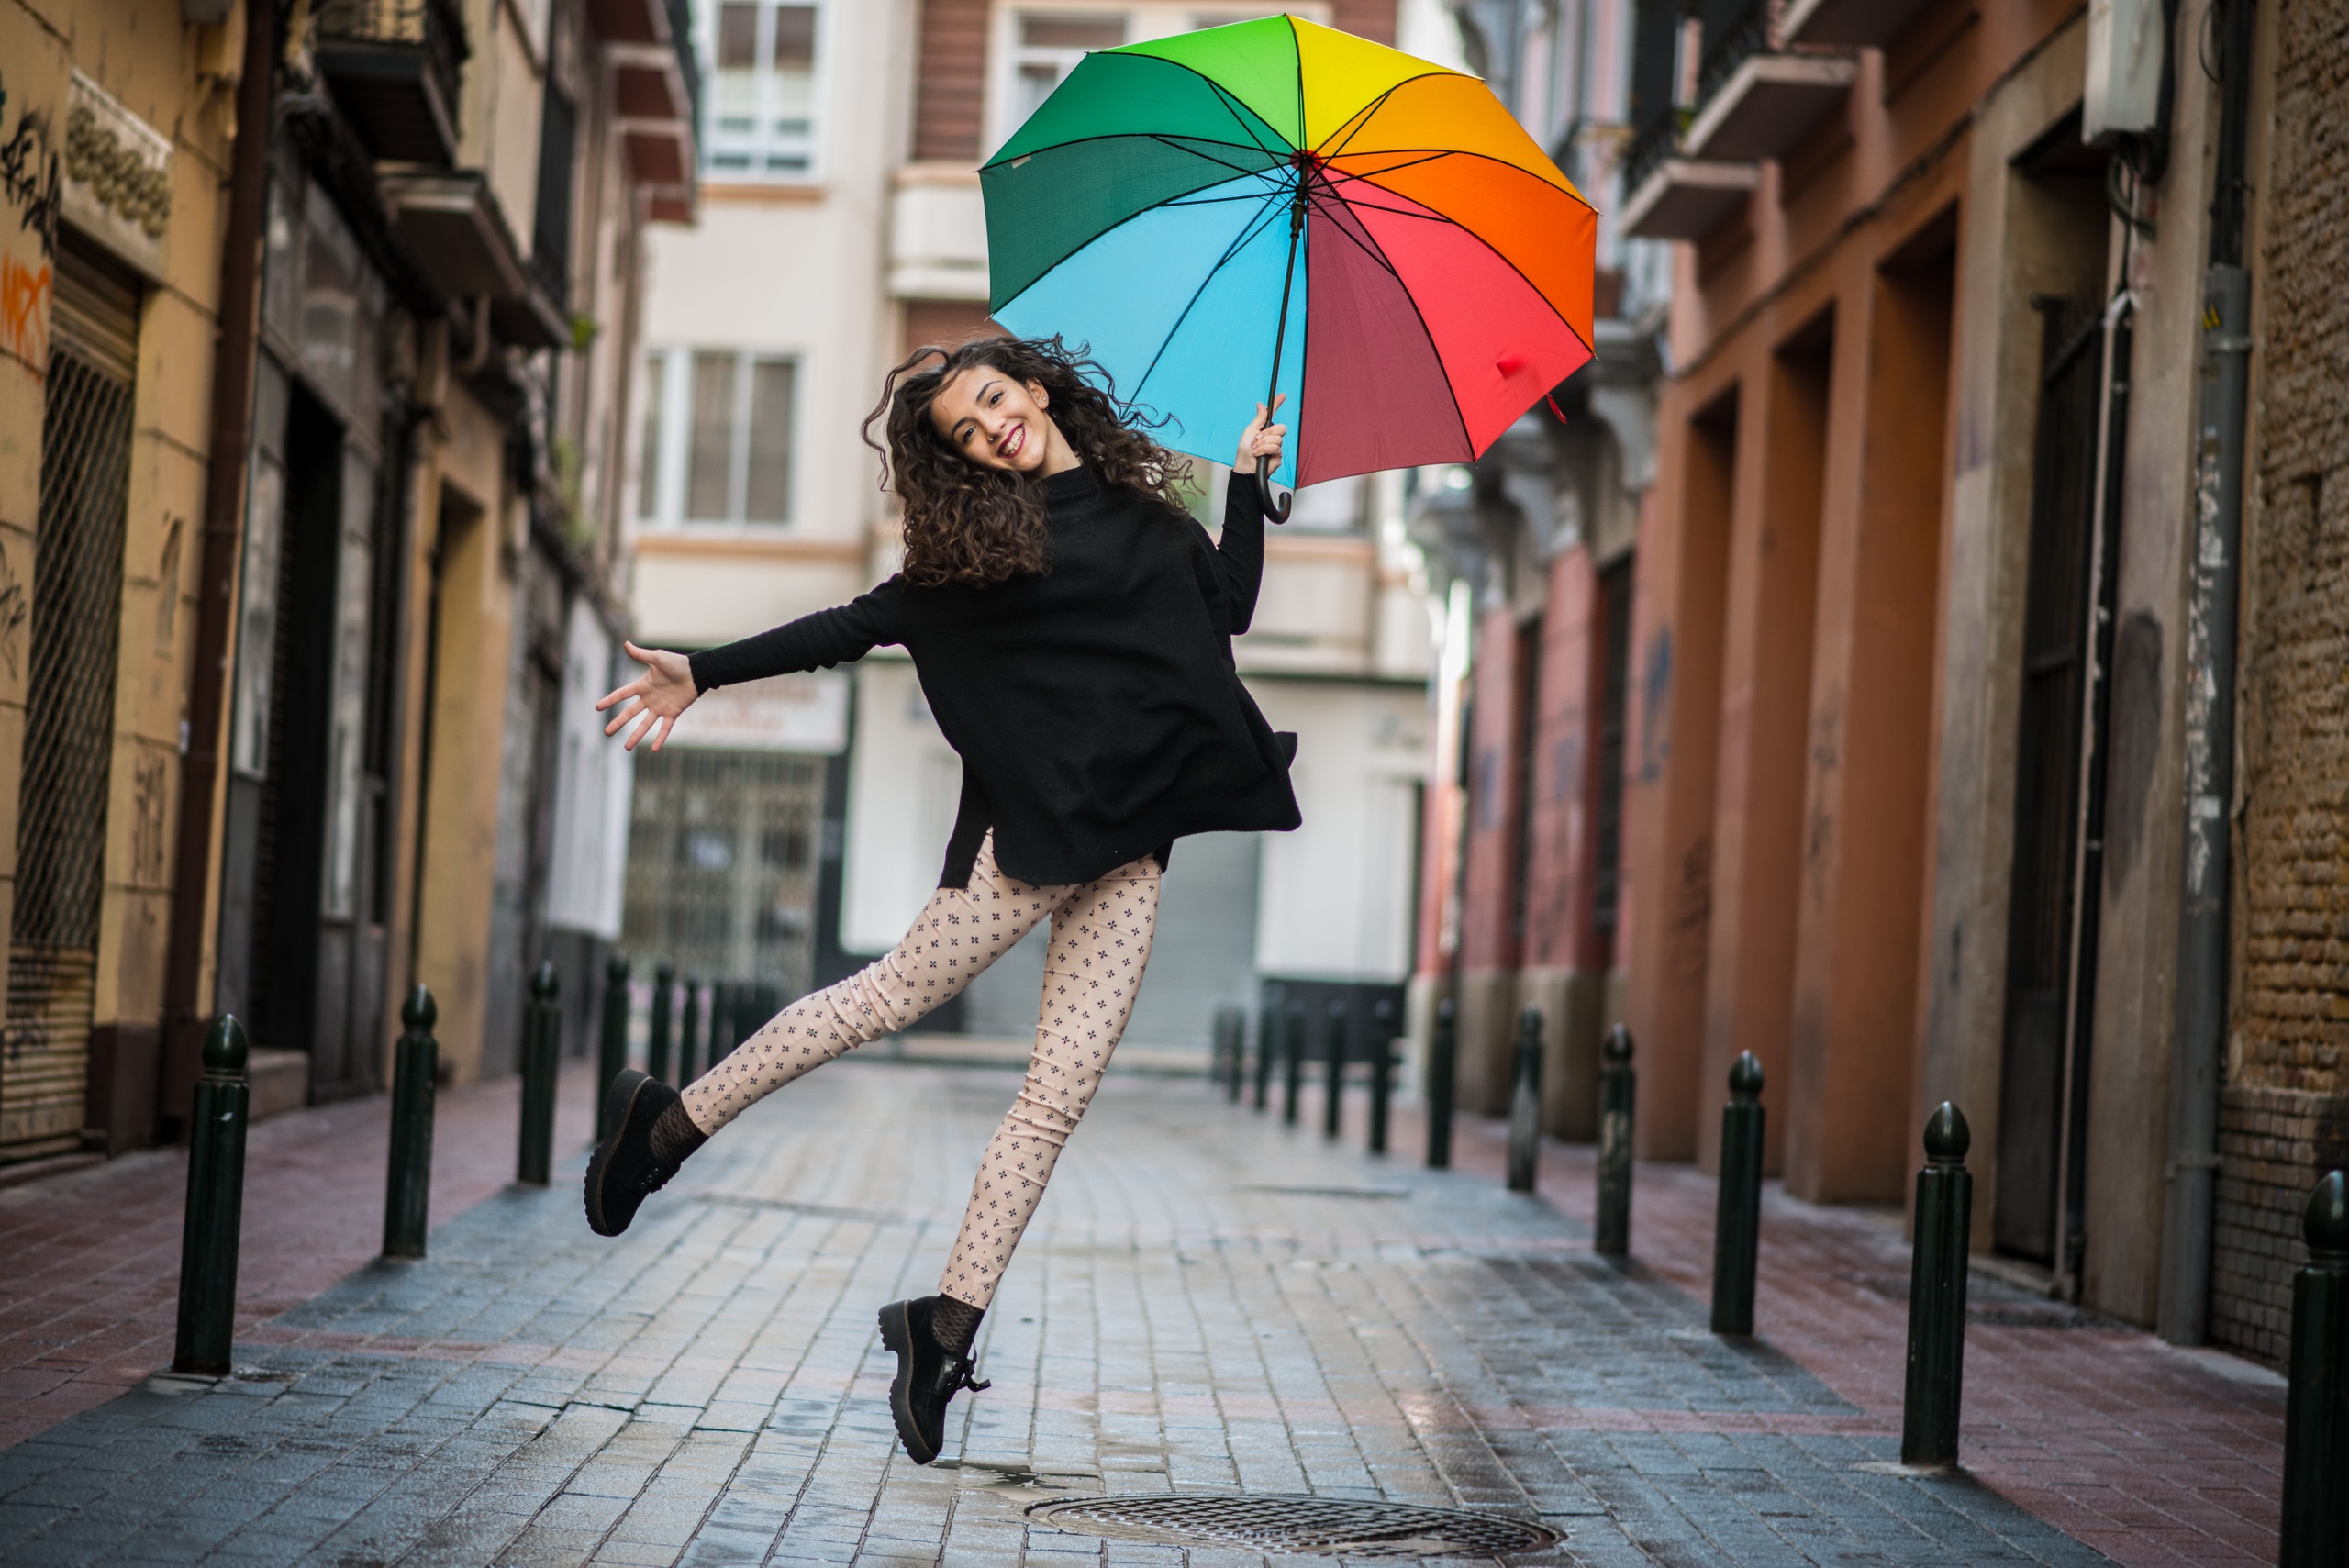 Выбираем зонт: как определиться с моделью и носить его элегантно